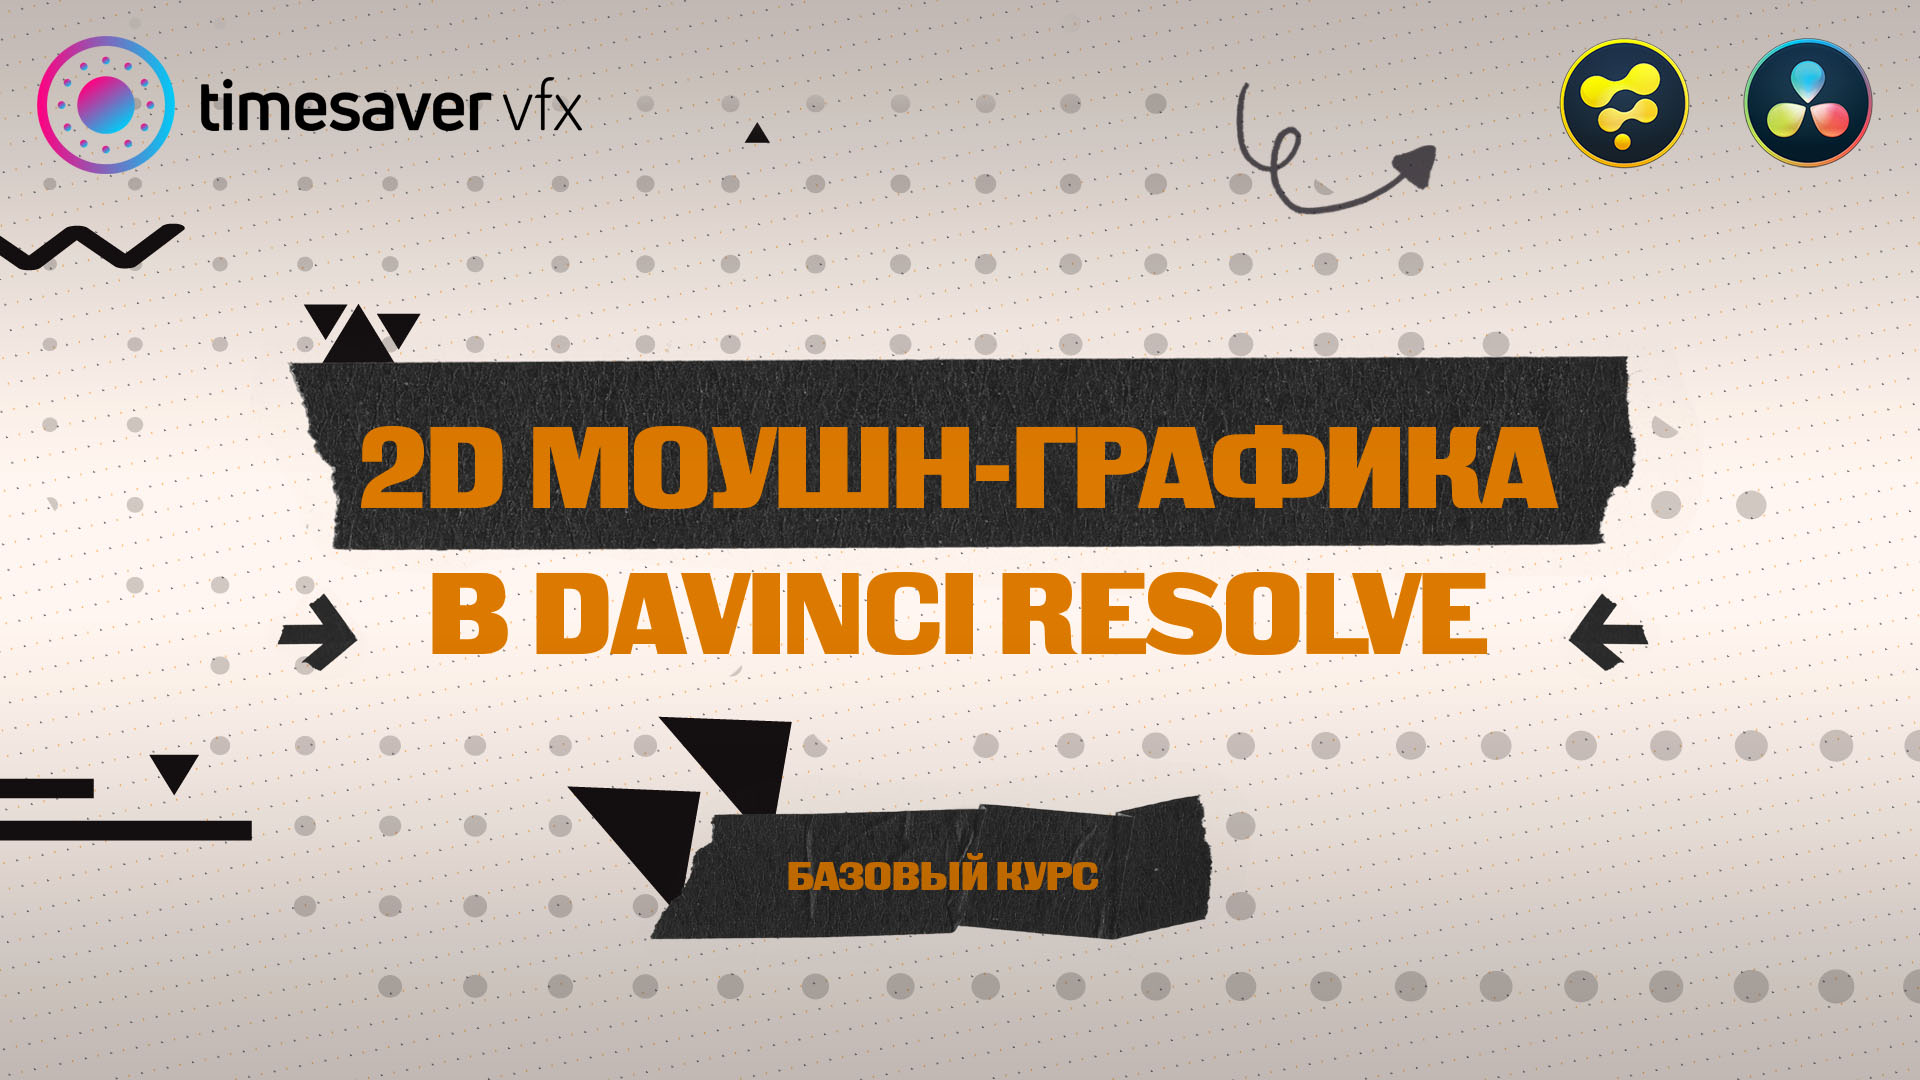 Изображение - Запуск курса по 2D моушн-графике в Davinci Resolve/Новый преподаватель в команде Timesaver